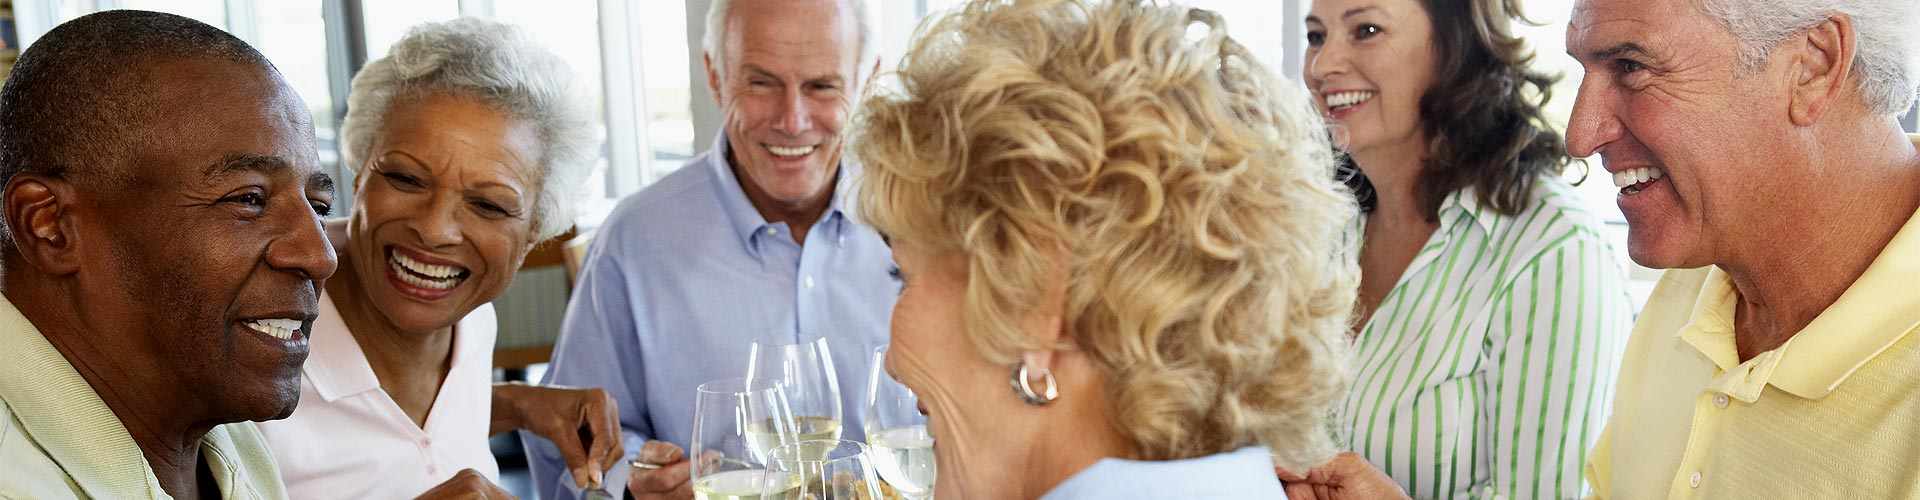 Restaurantes para jubilaciones 2019 en Badalona